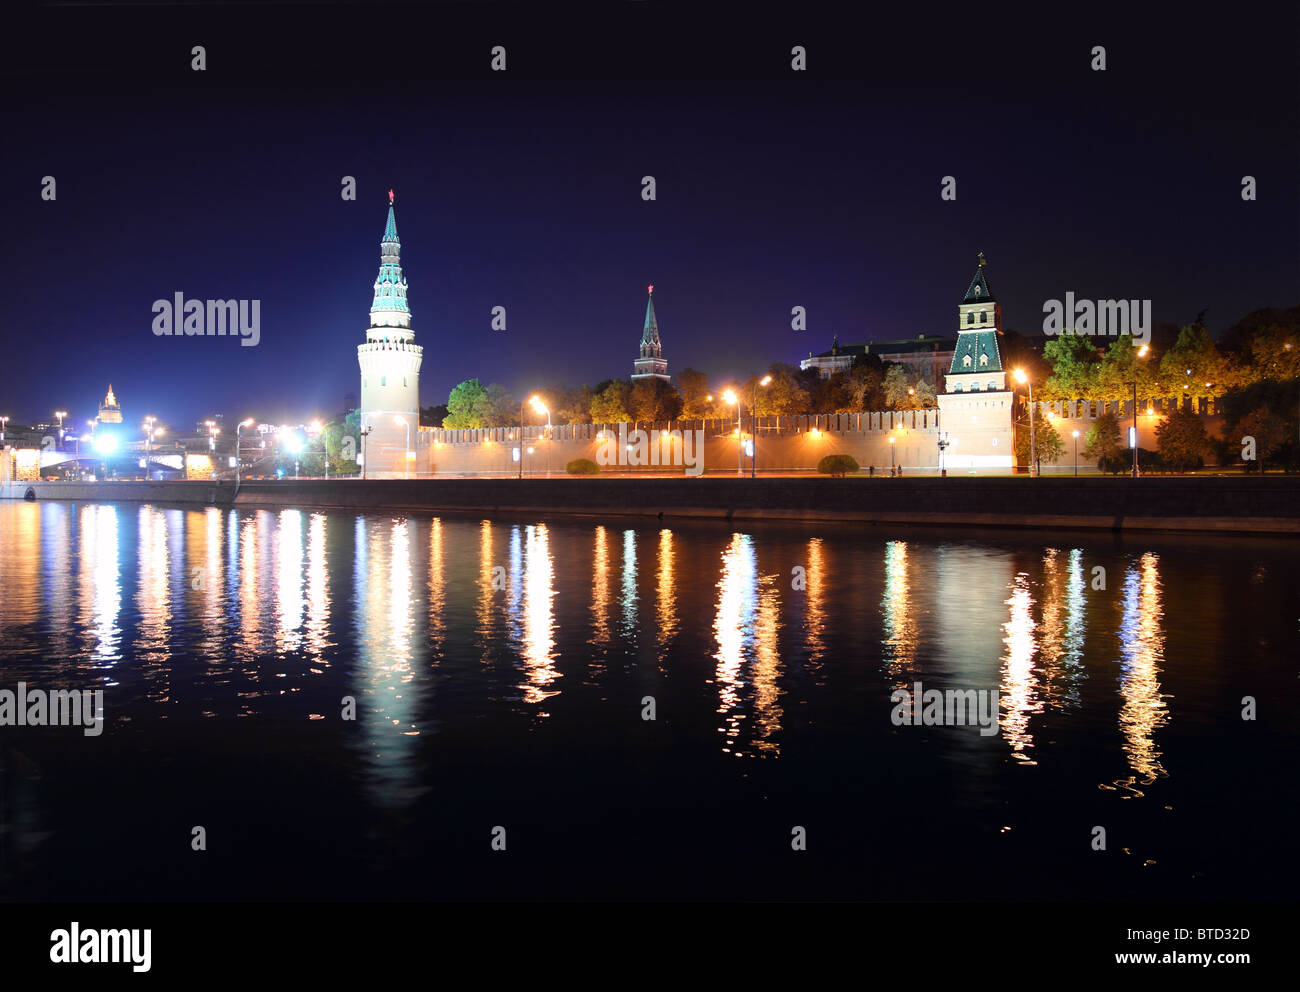 Vue sur la rivière de kremlin de nuit en Russie Moscou Banque D'Images